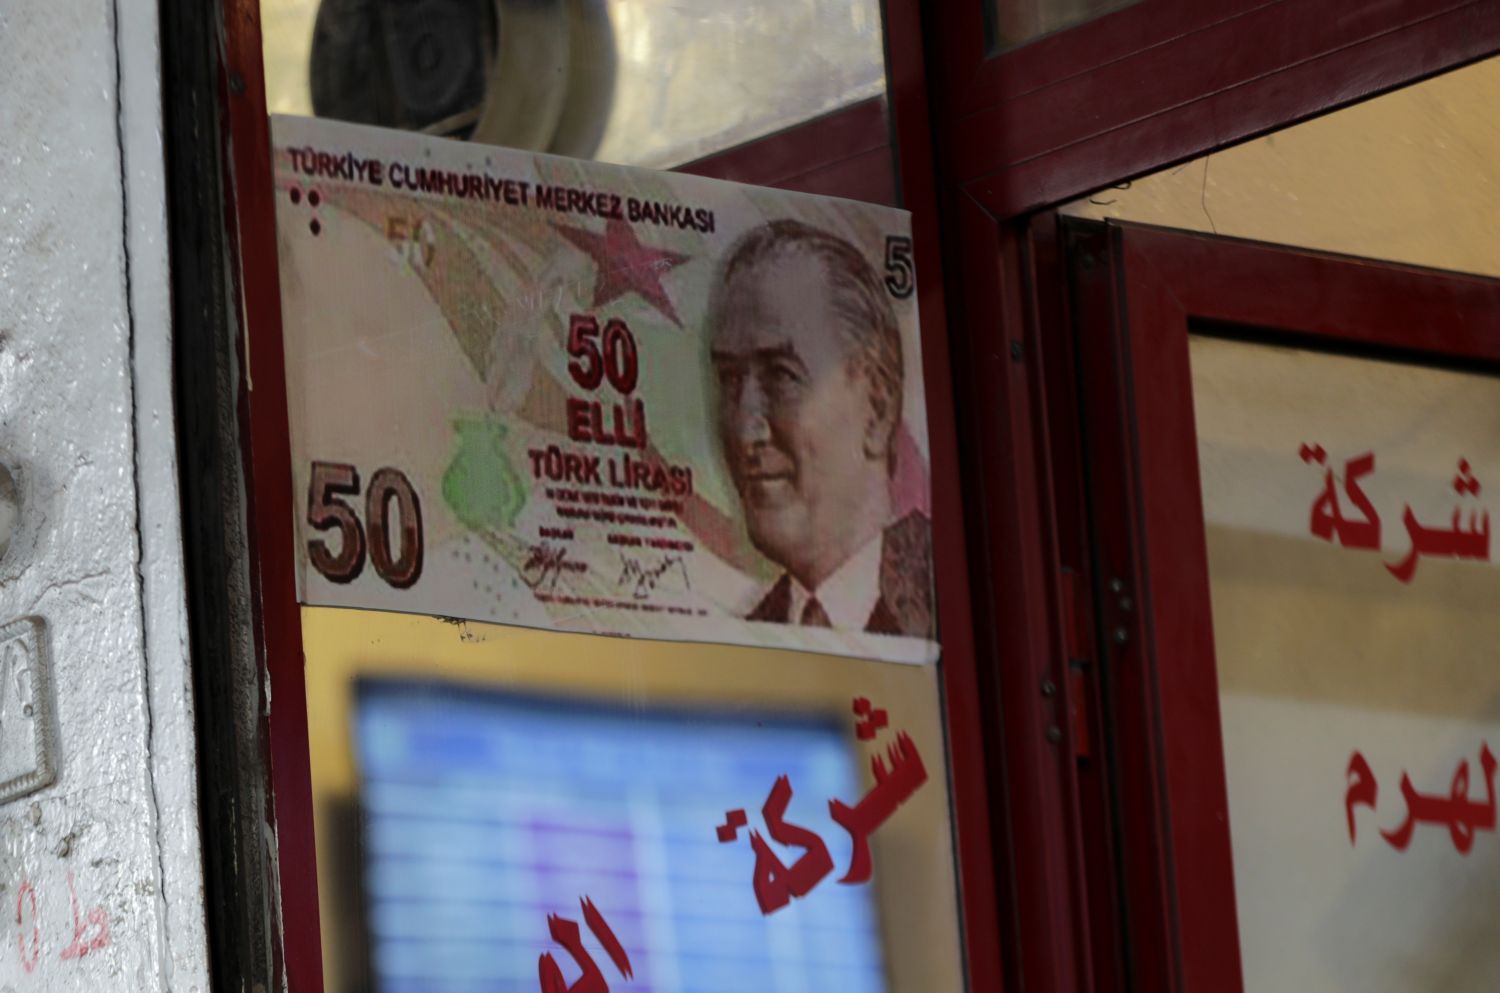 Turkije krijgt Europees geld voor vluchtelingen, maar moet dat de mensen of de grenzen beschermen?